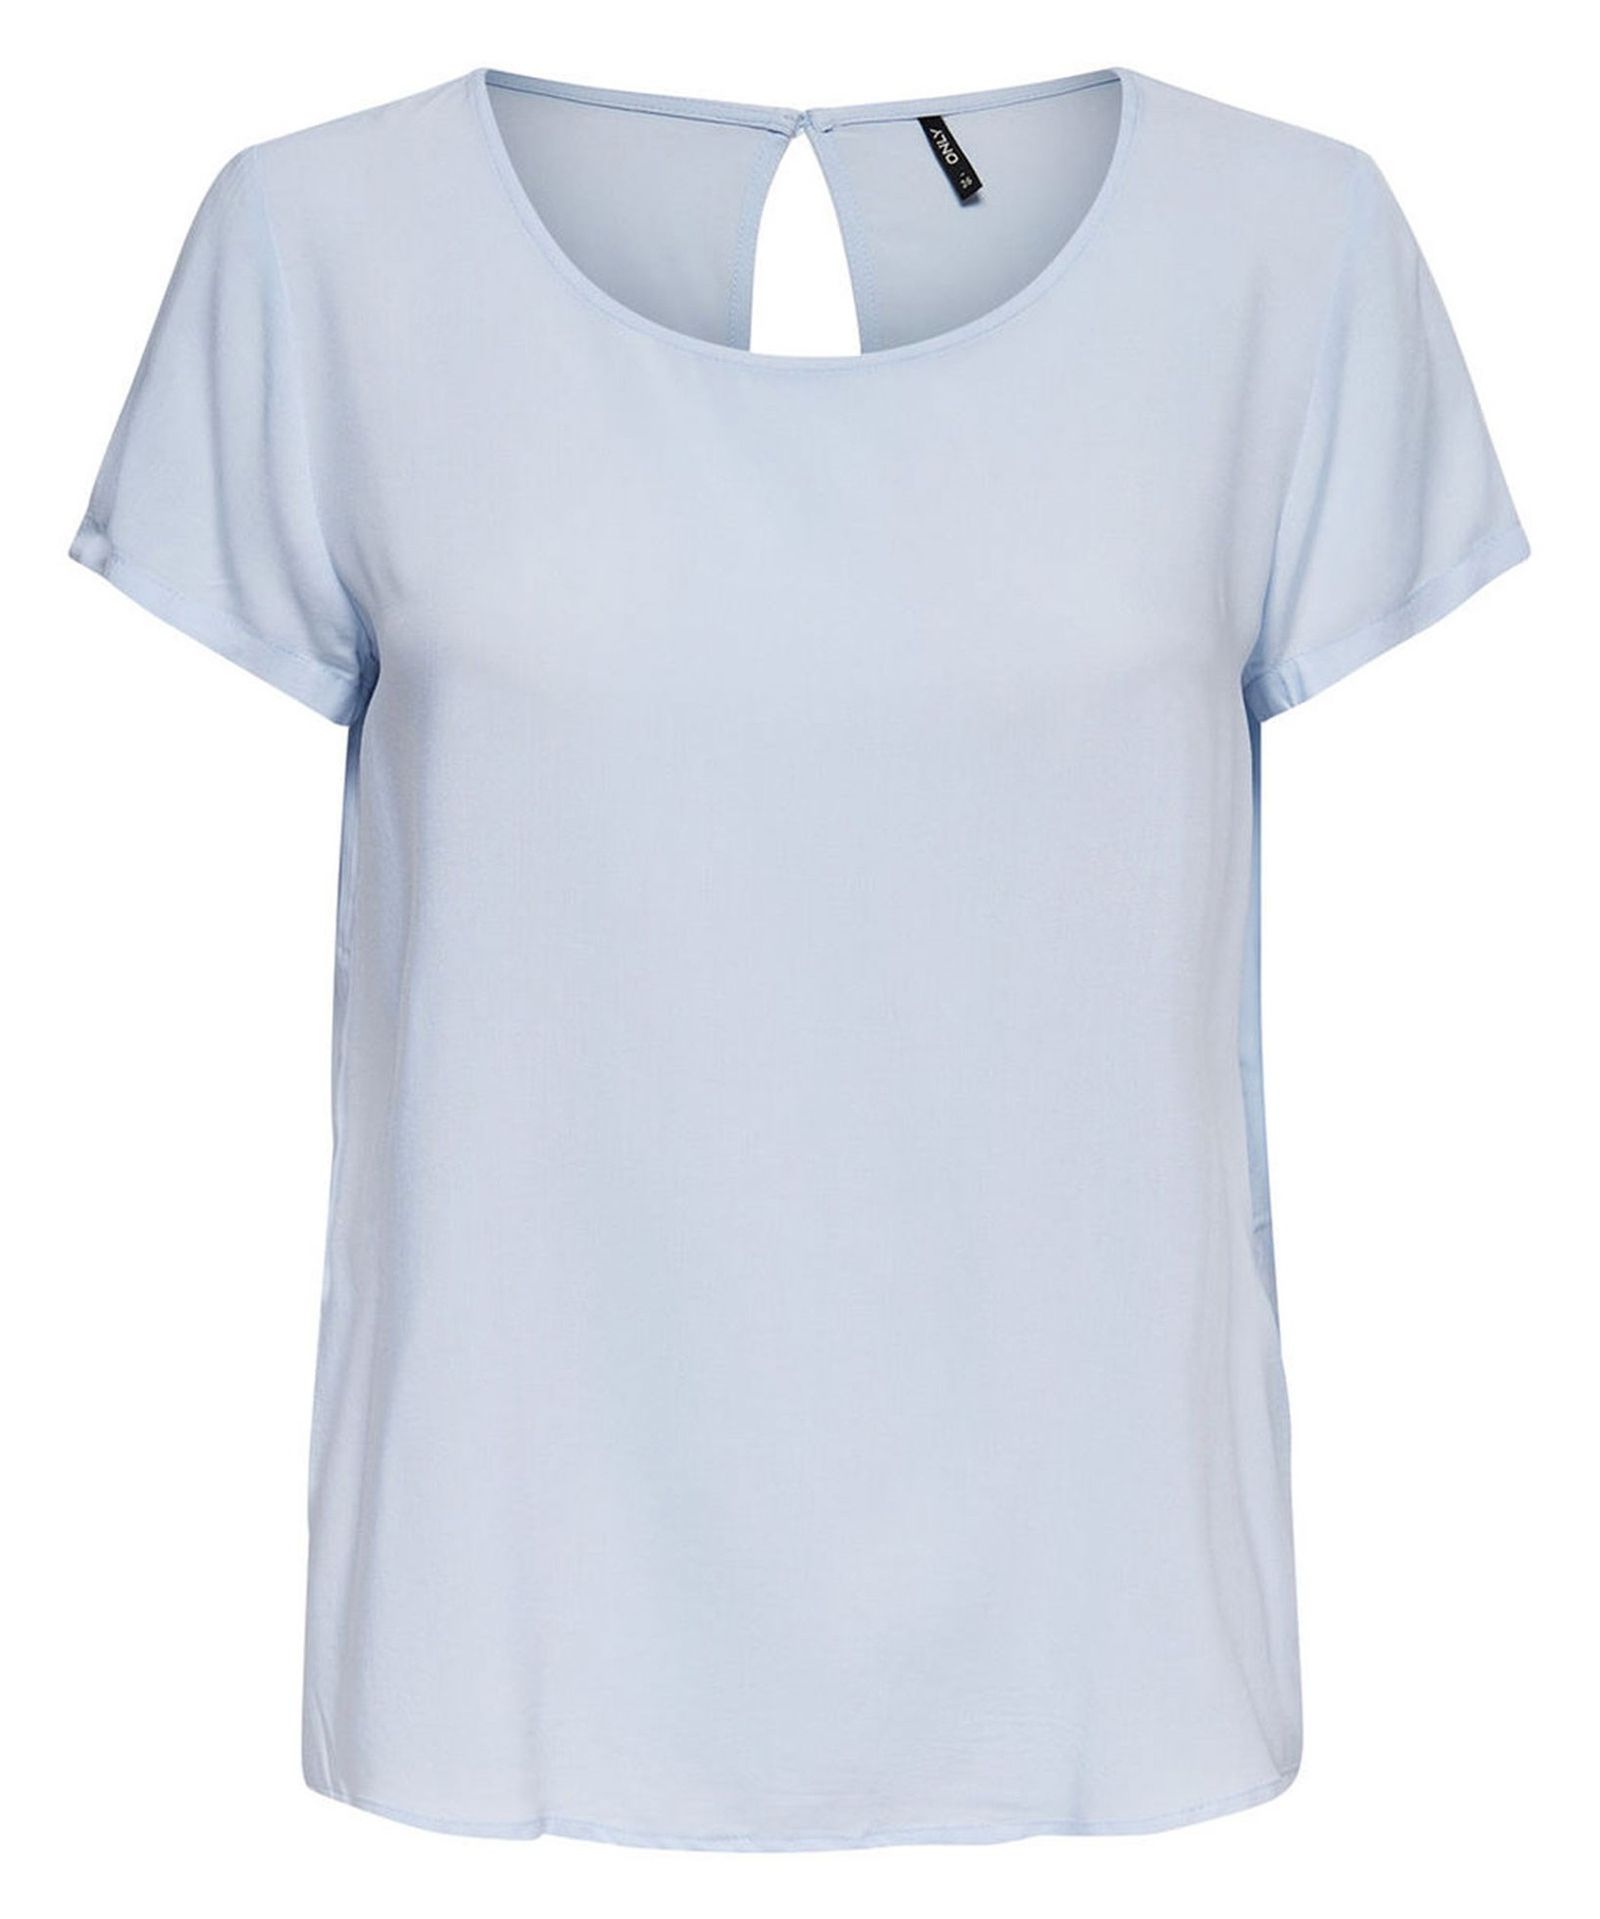 تی شرت ویسکوز یقه گرد زنانه - اونلی - آبي - 1